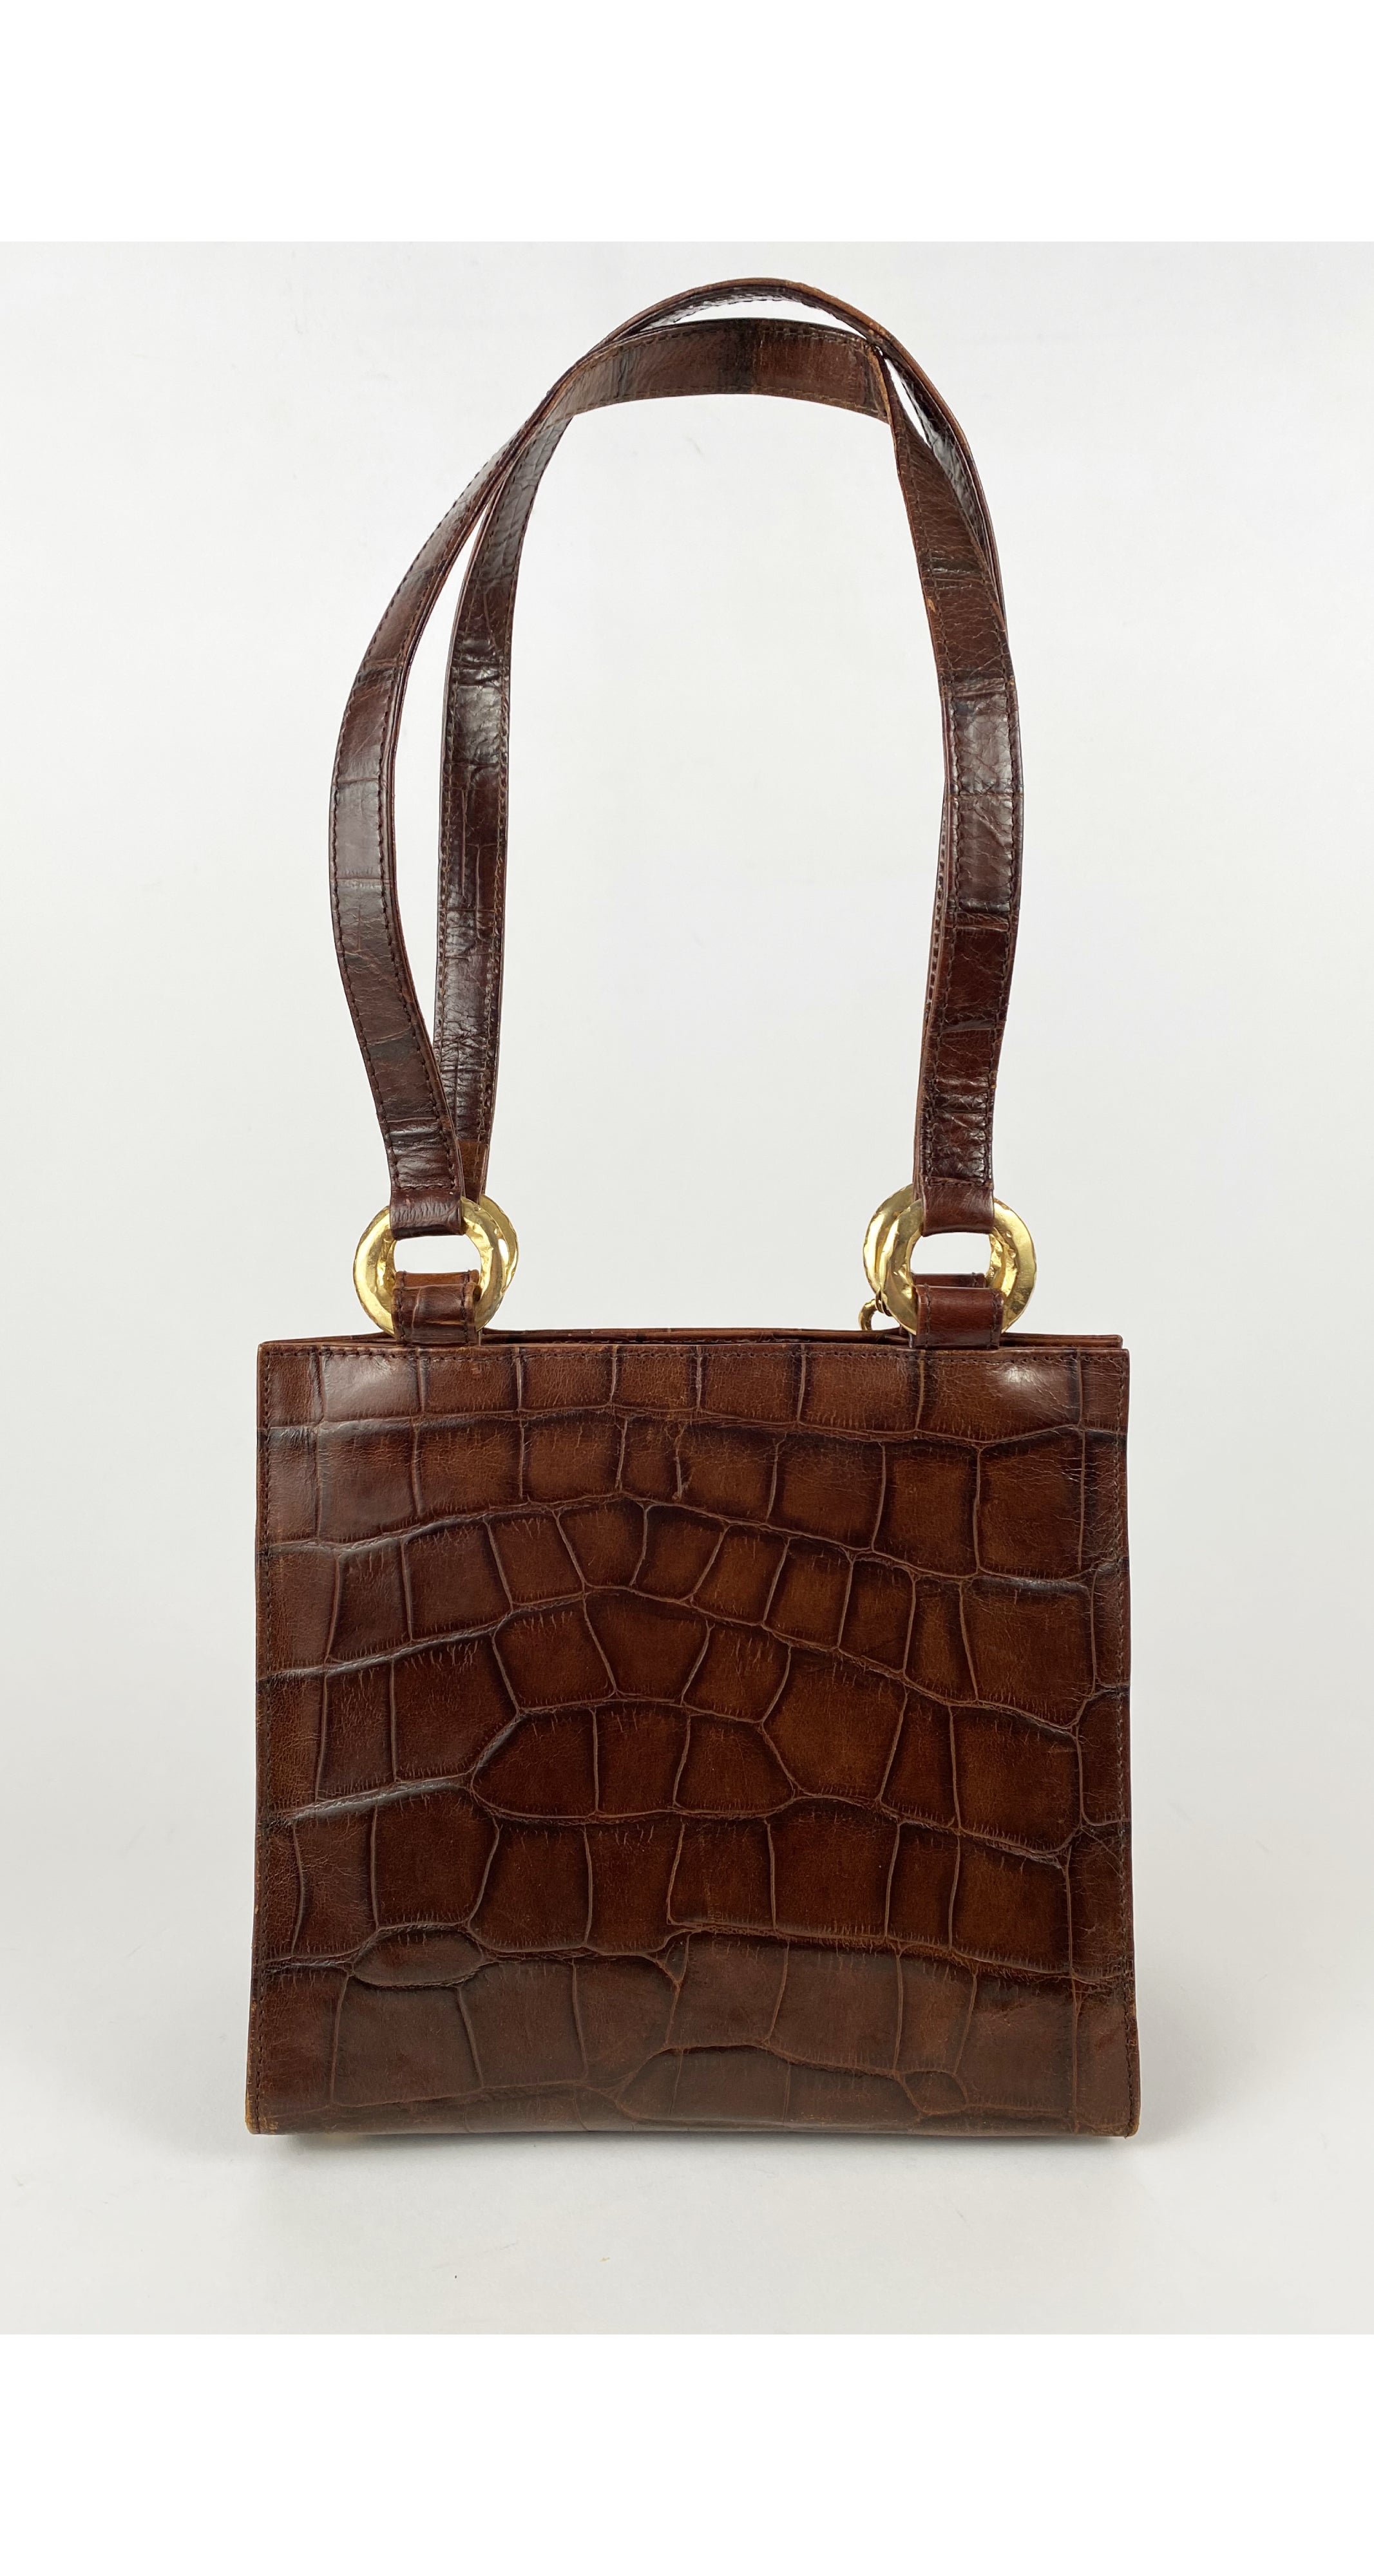 1980s Crocodile Embossed Leather Handbag